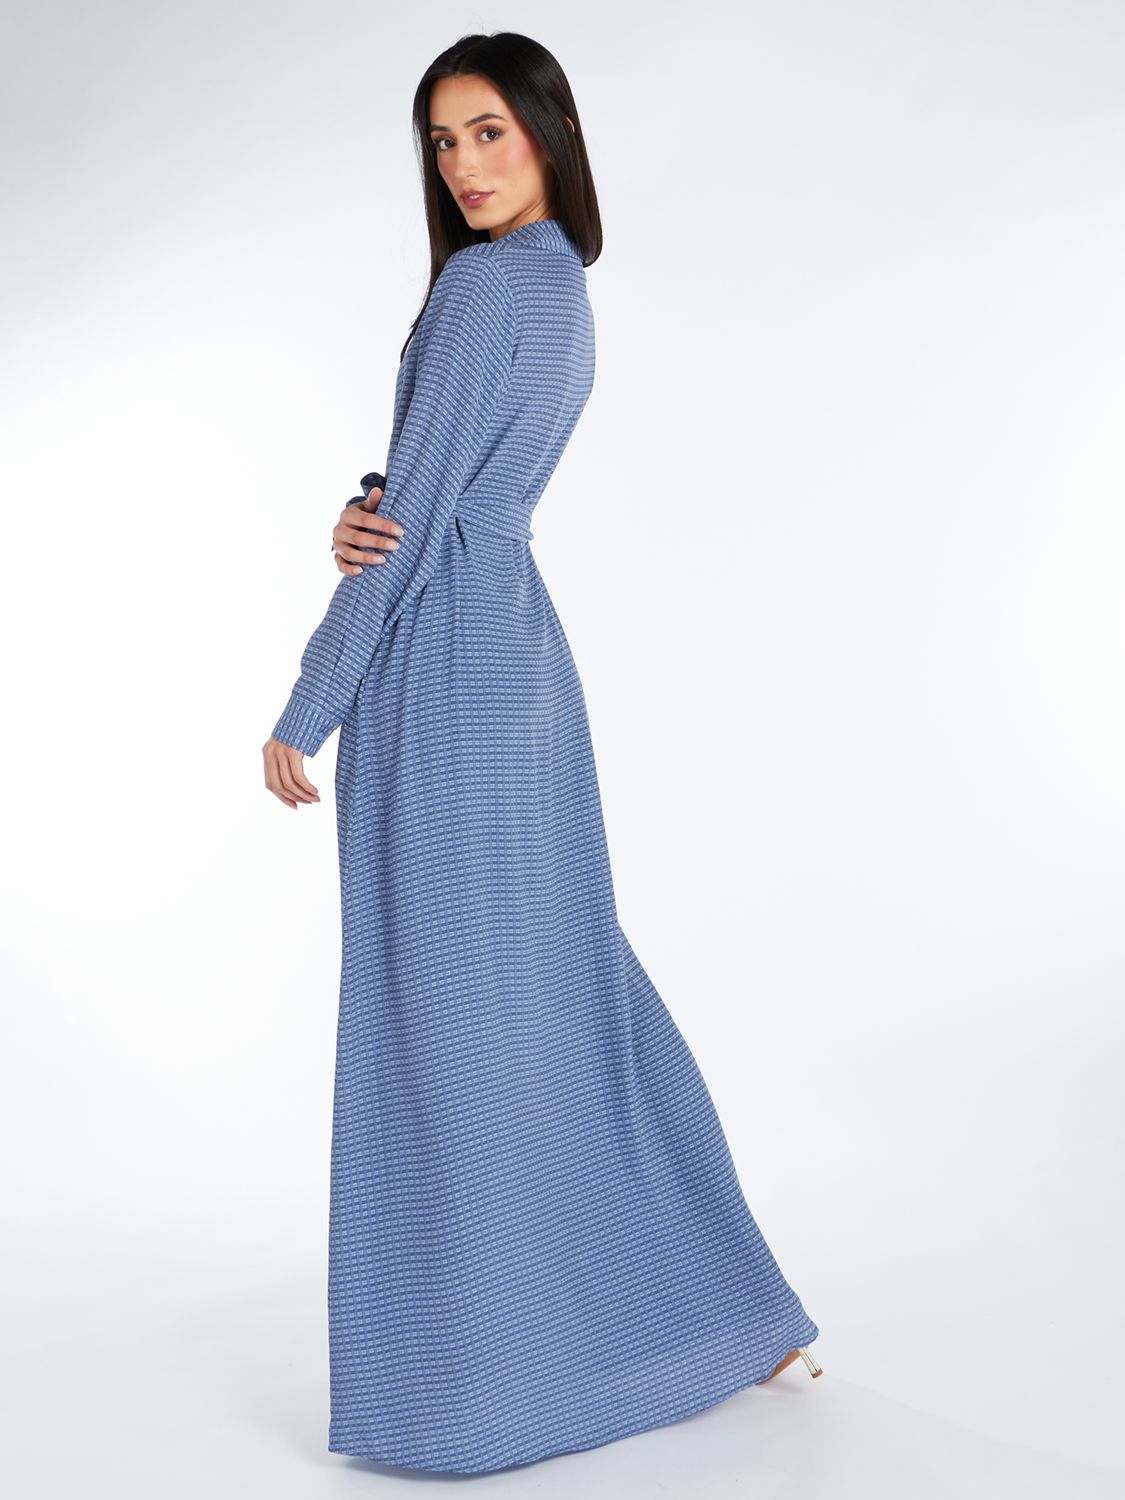 Aab Jacquard Print Maxi Dress, Blue, S Regular